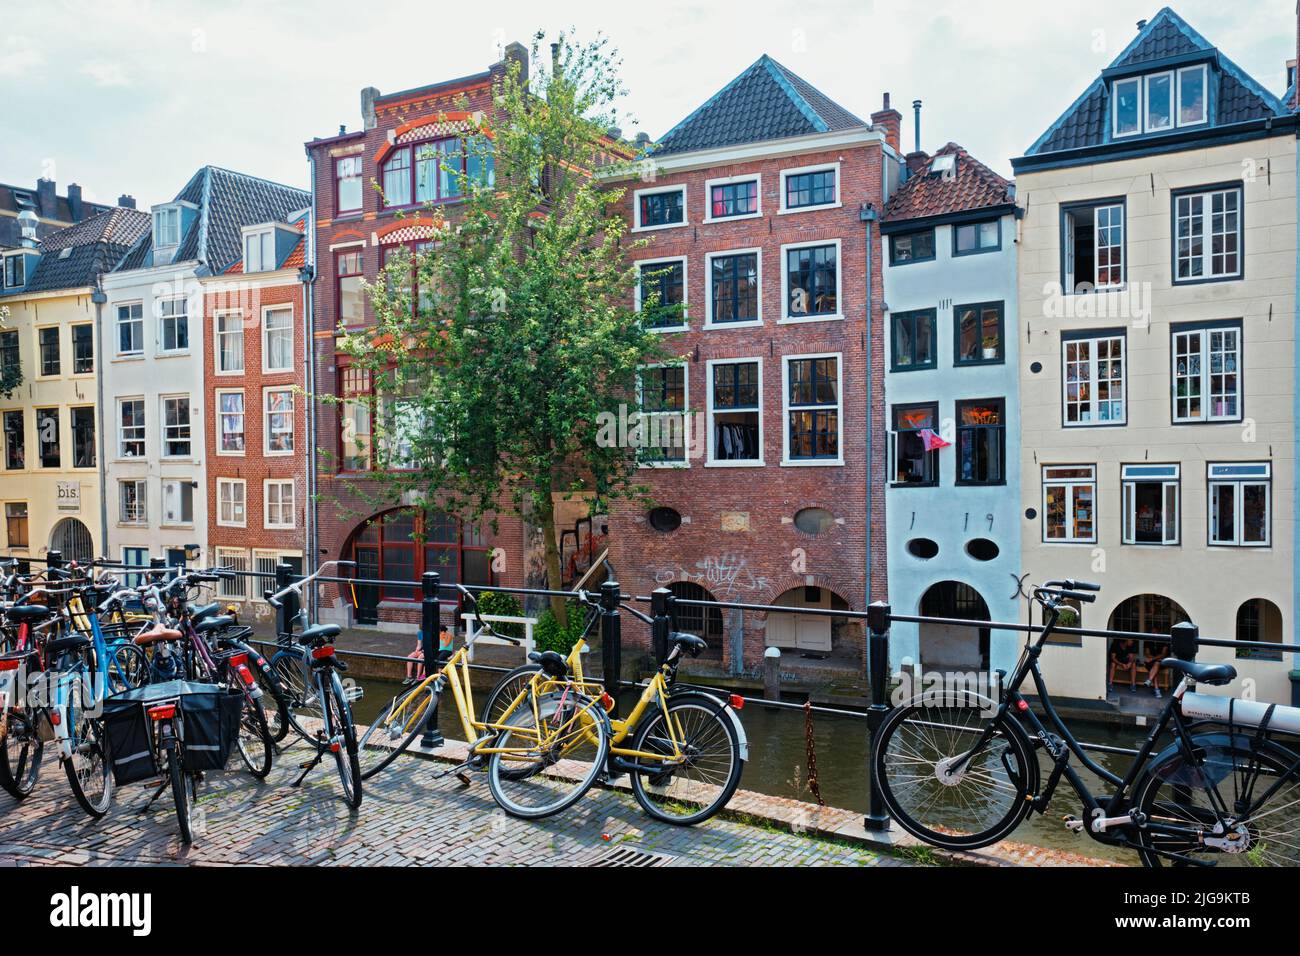 Bicicletas que son un transporte muy popular en los Países Bajos estacionado en la calle cerca de casas antiguas Foto de stock